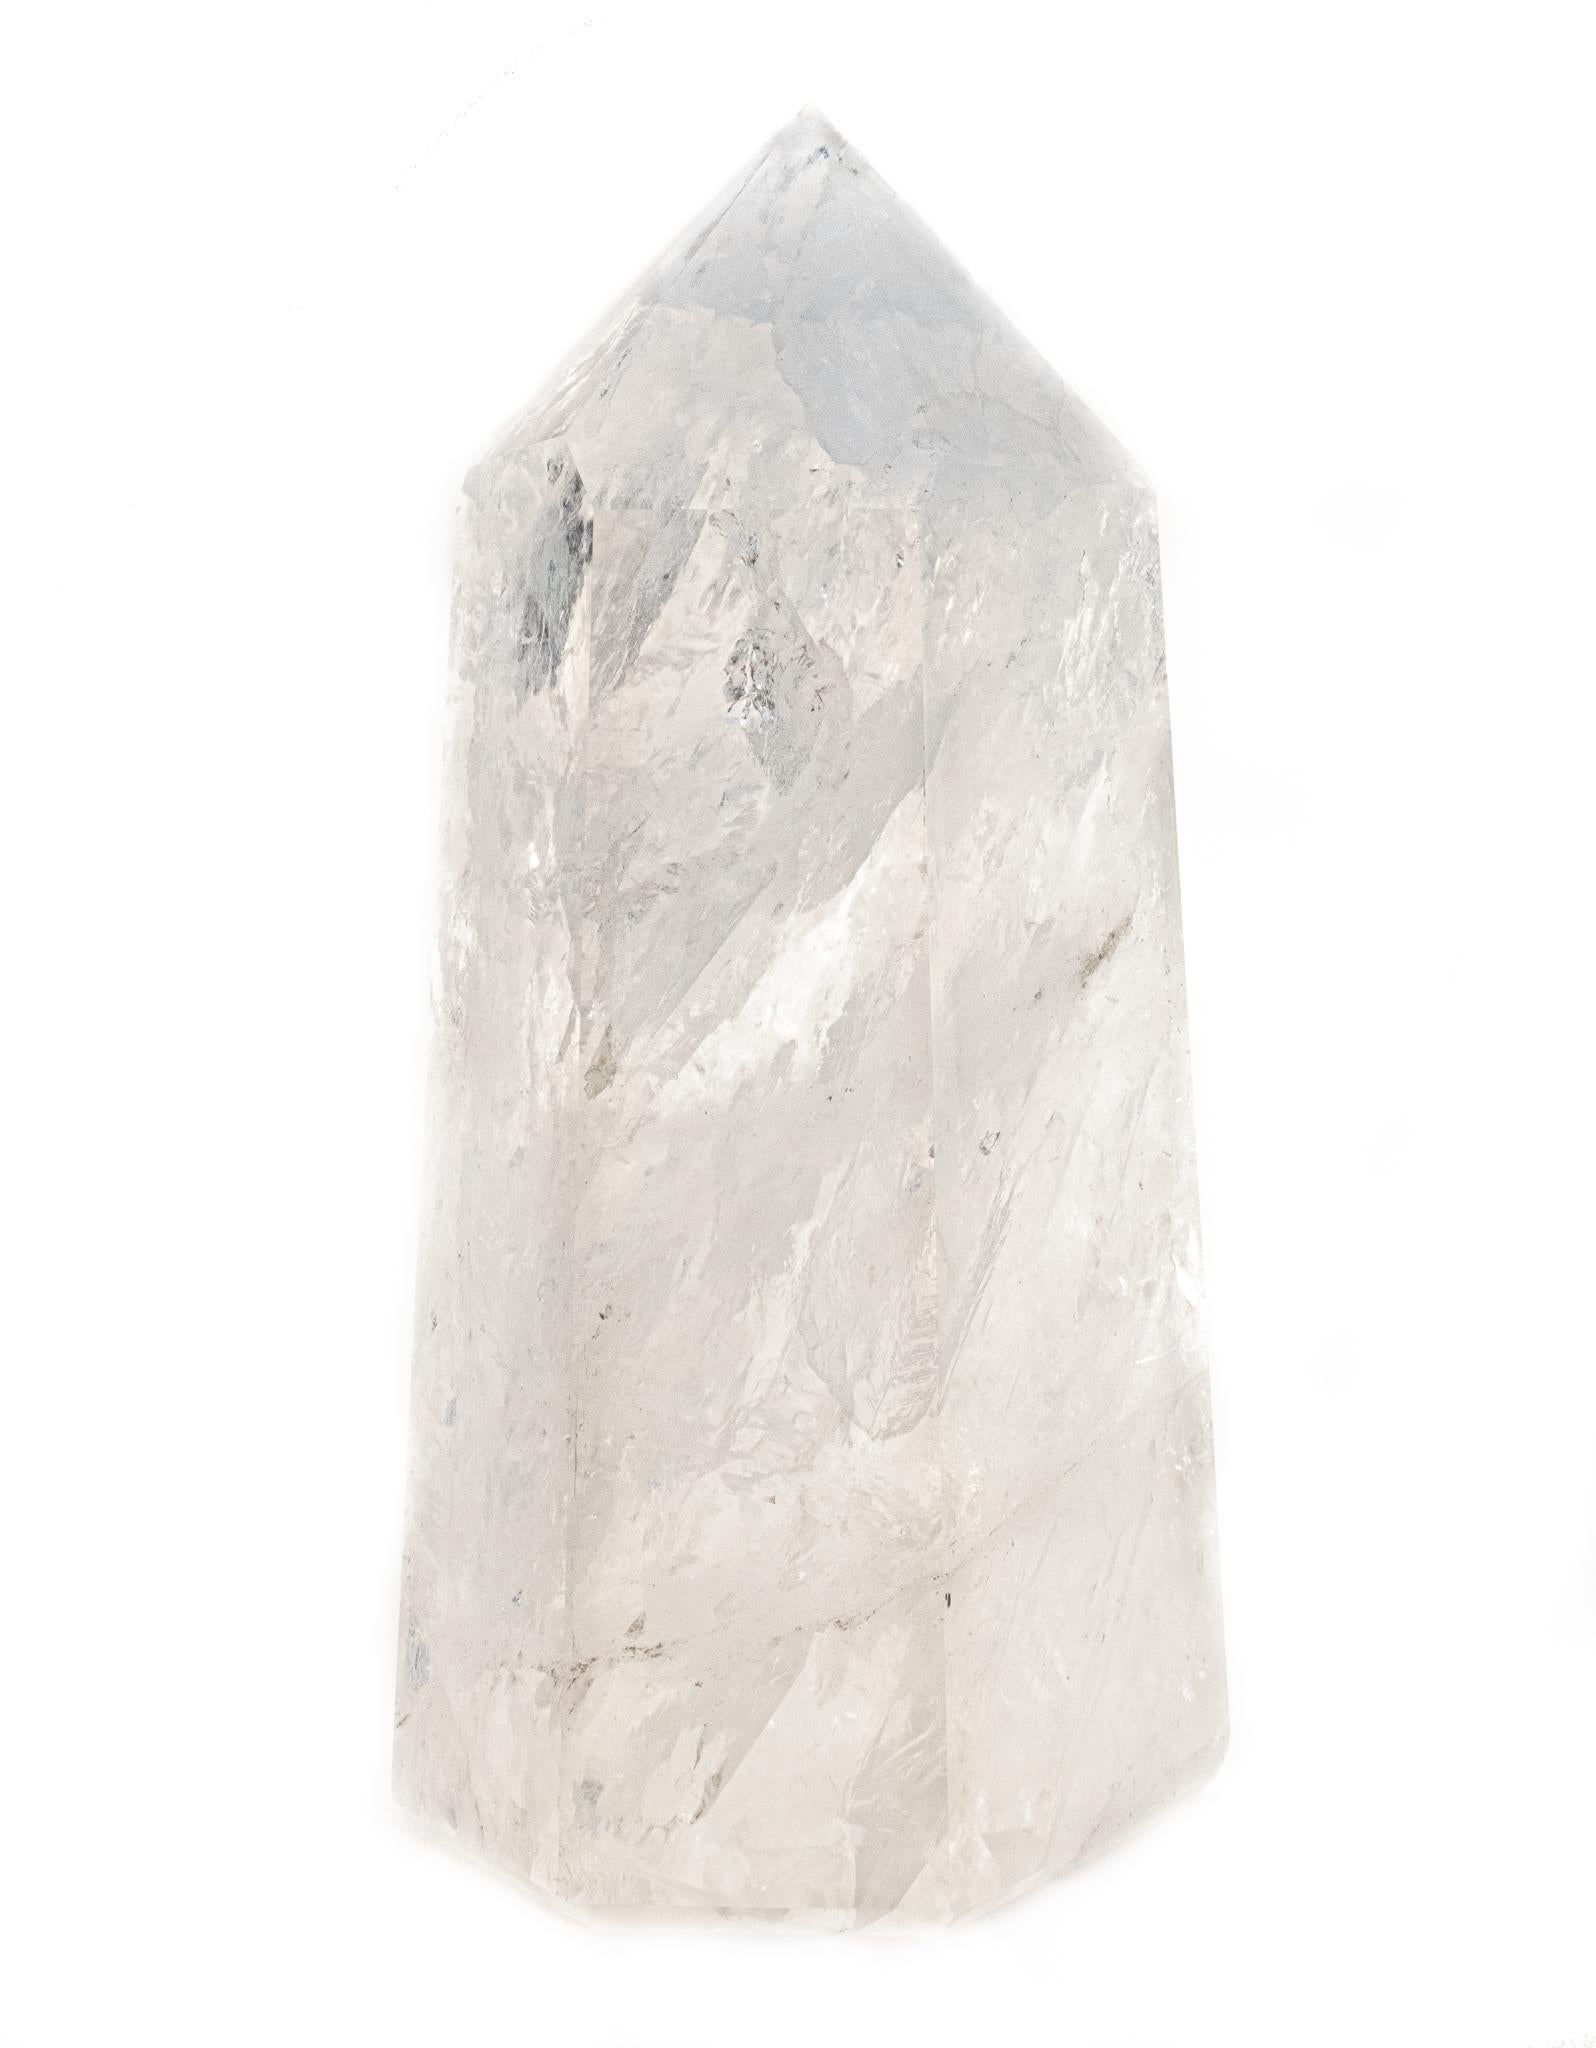 Contemporary Polished Crystal Quartz Obelisk Point For Sale